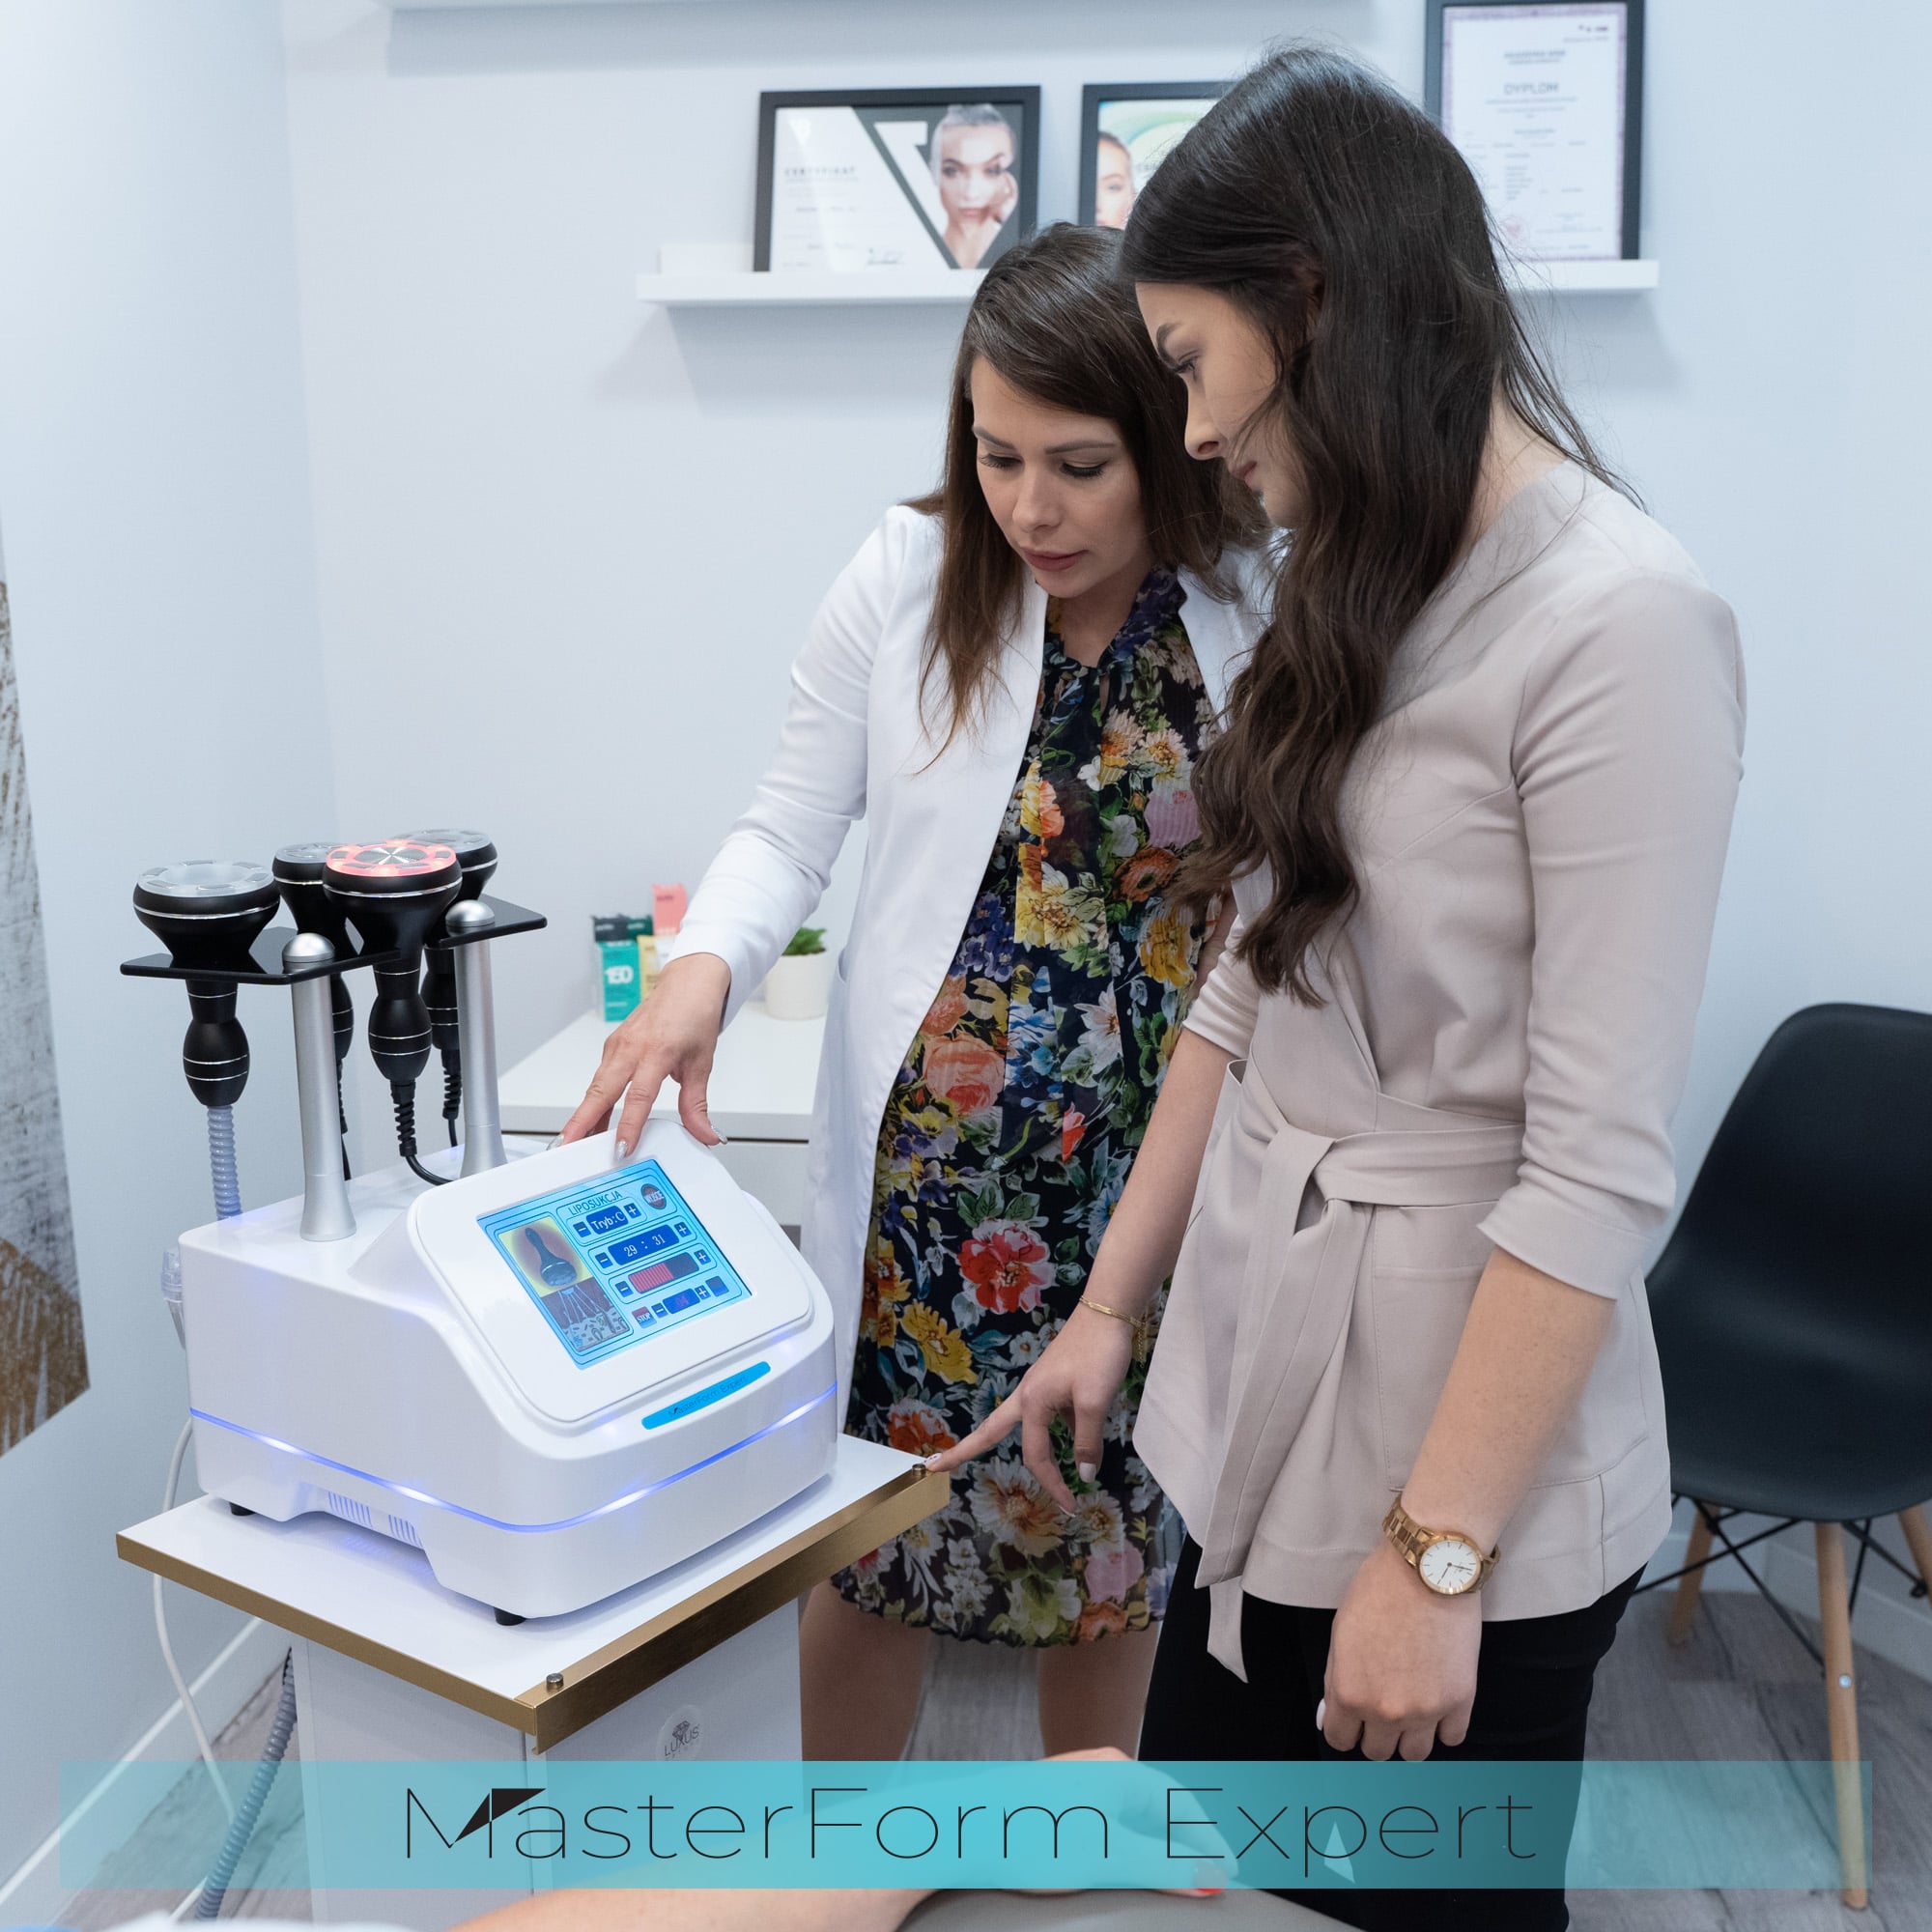 Kurs obejmuje praktyczne wskazówki dotyczące prawidłowego stosowania maszyny MasterForm Expert w celu osiągnięcia najlepszych efektów terapeutycznych